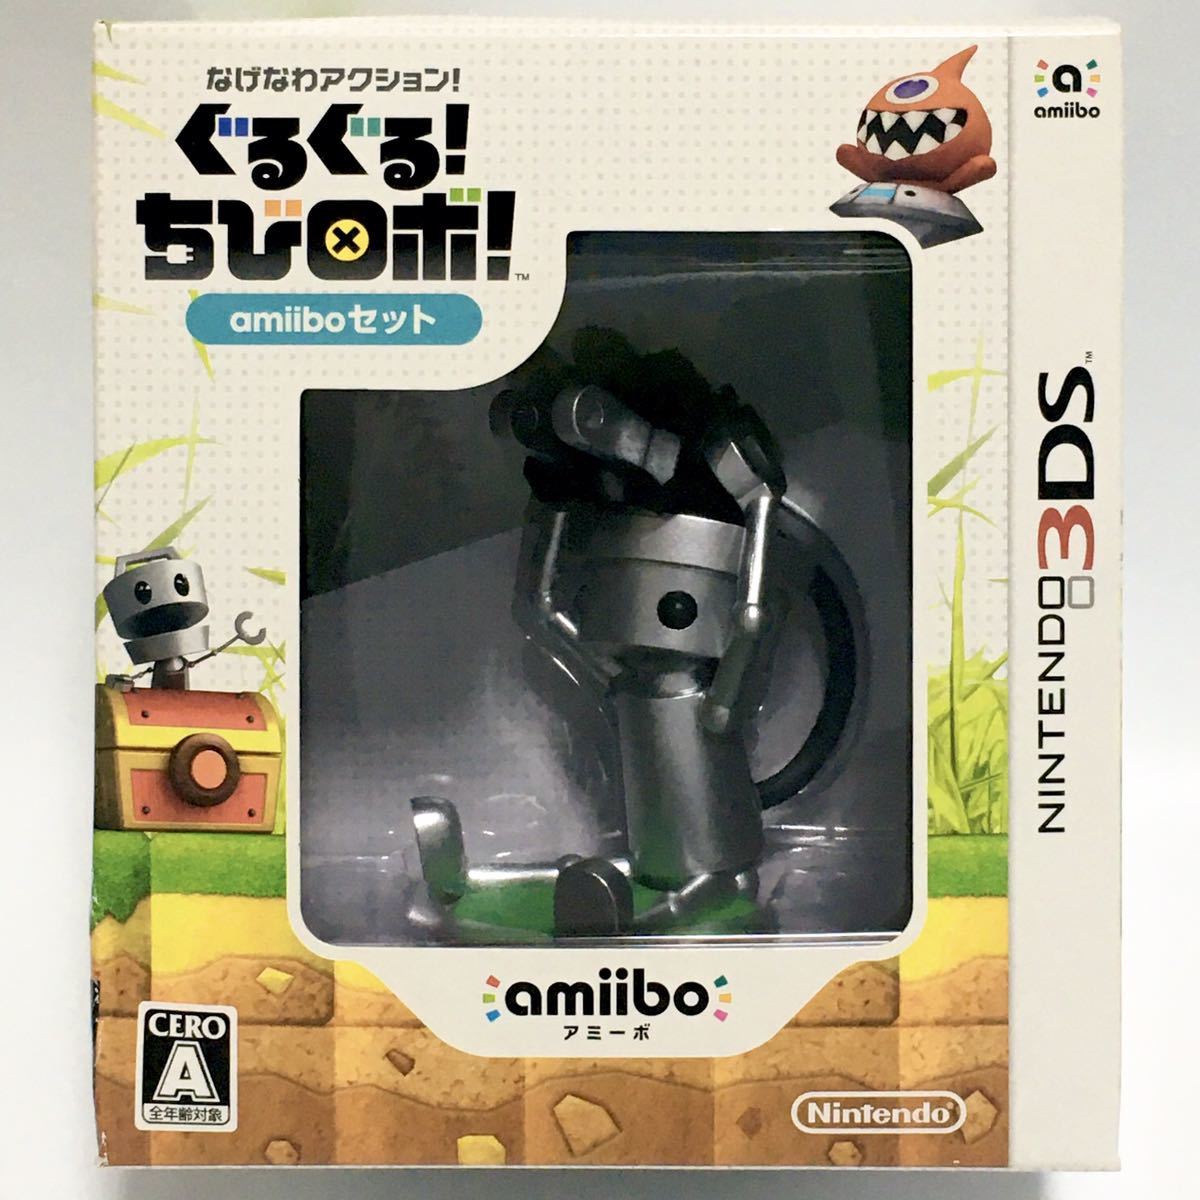 【新品】Nintendo3DS なげなわアクション!ぐるぐる!ちびロボ!amiiboセット